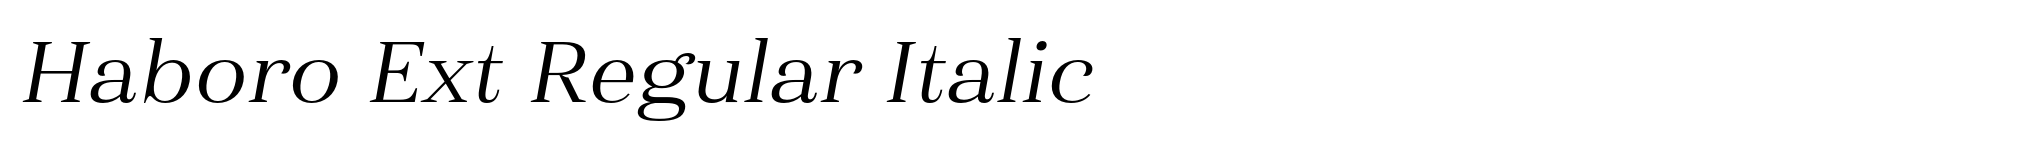 Haboro Ext Regular Italic image